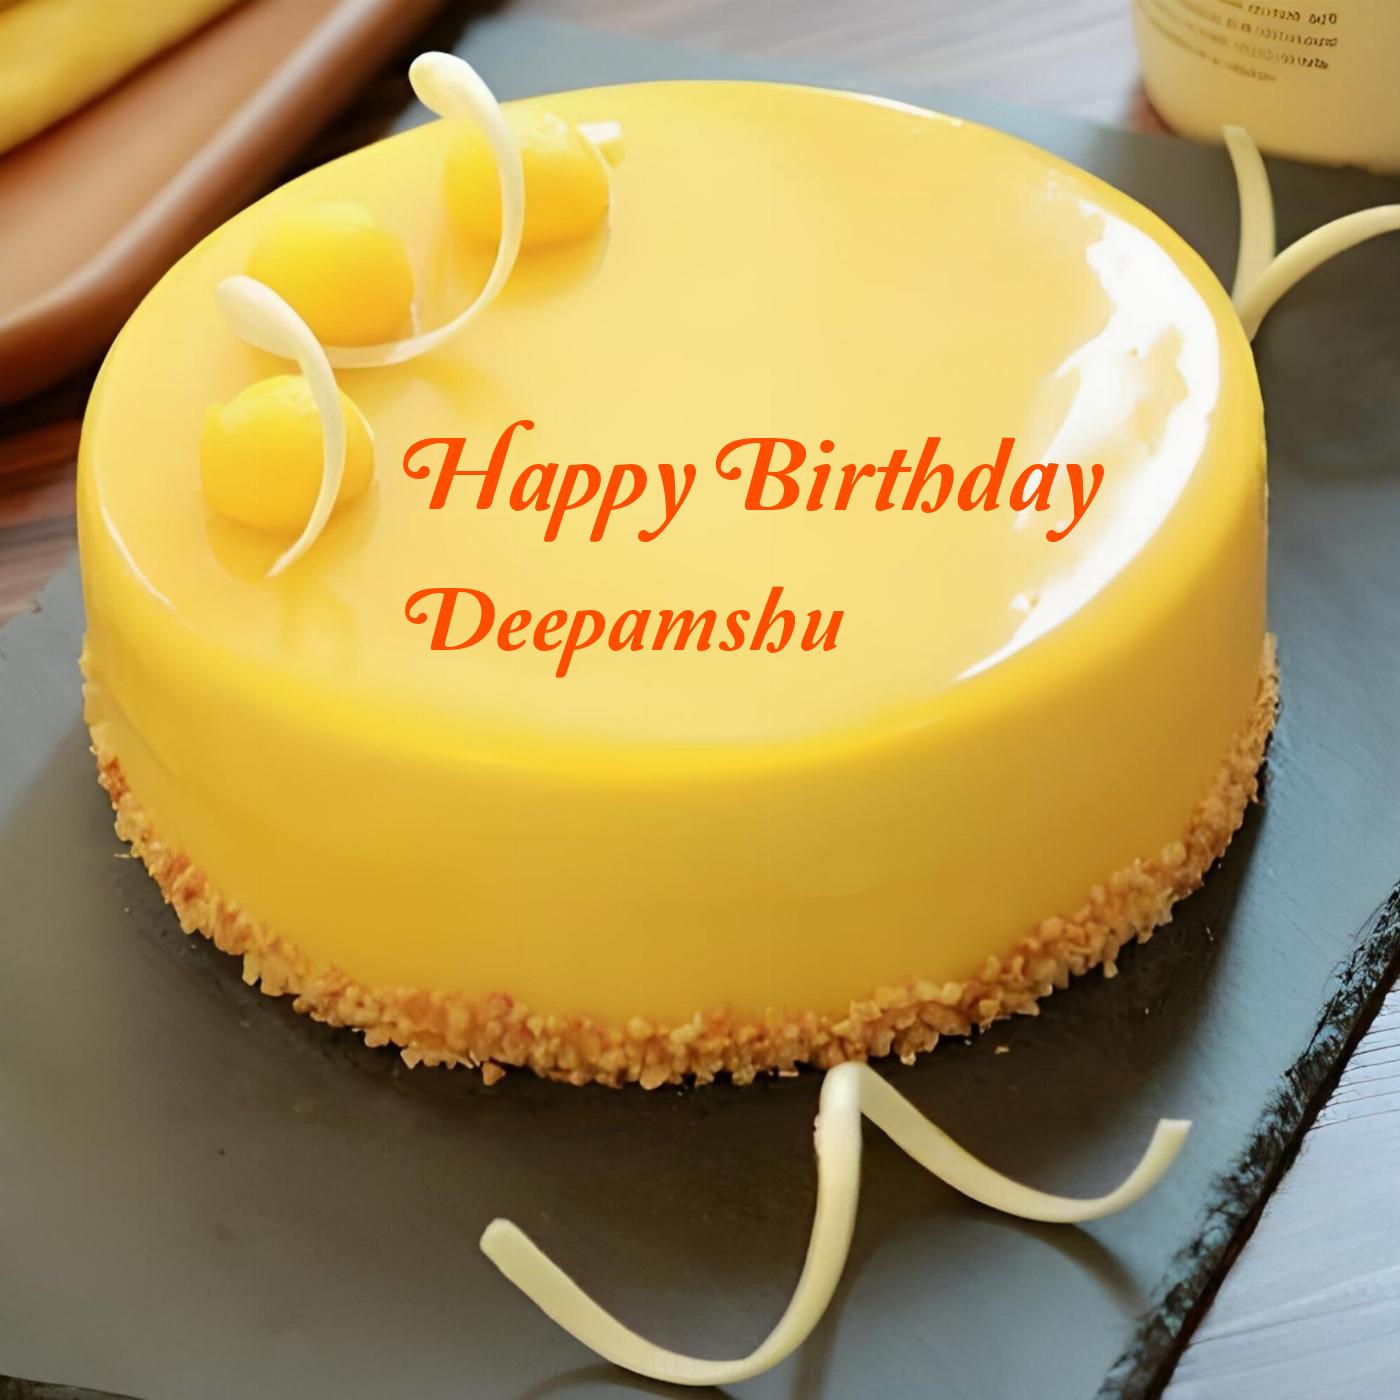 Happy Birthday Deepamshu Beautiful Yellow Cake